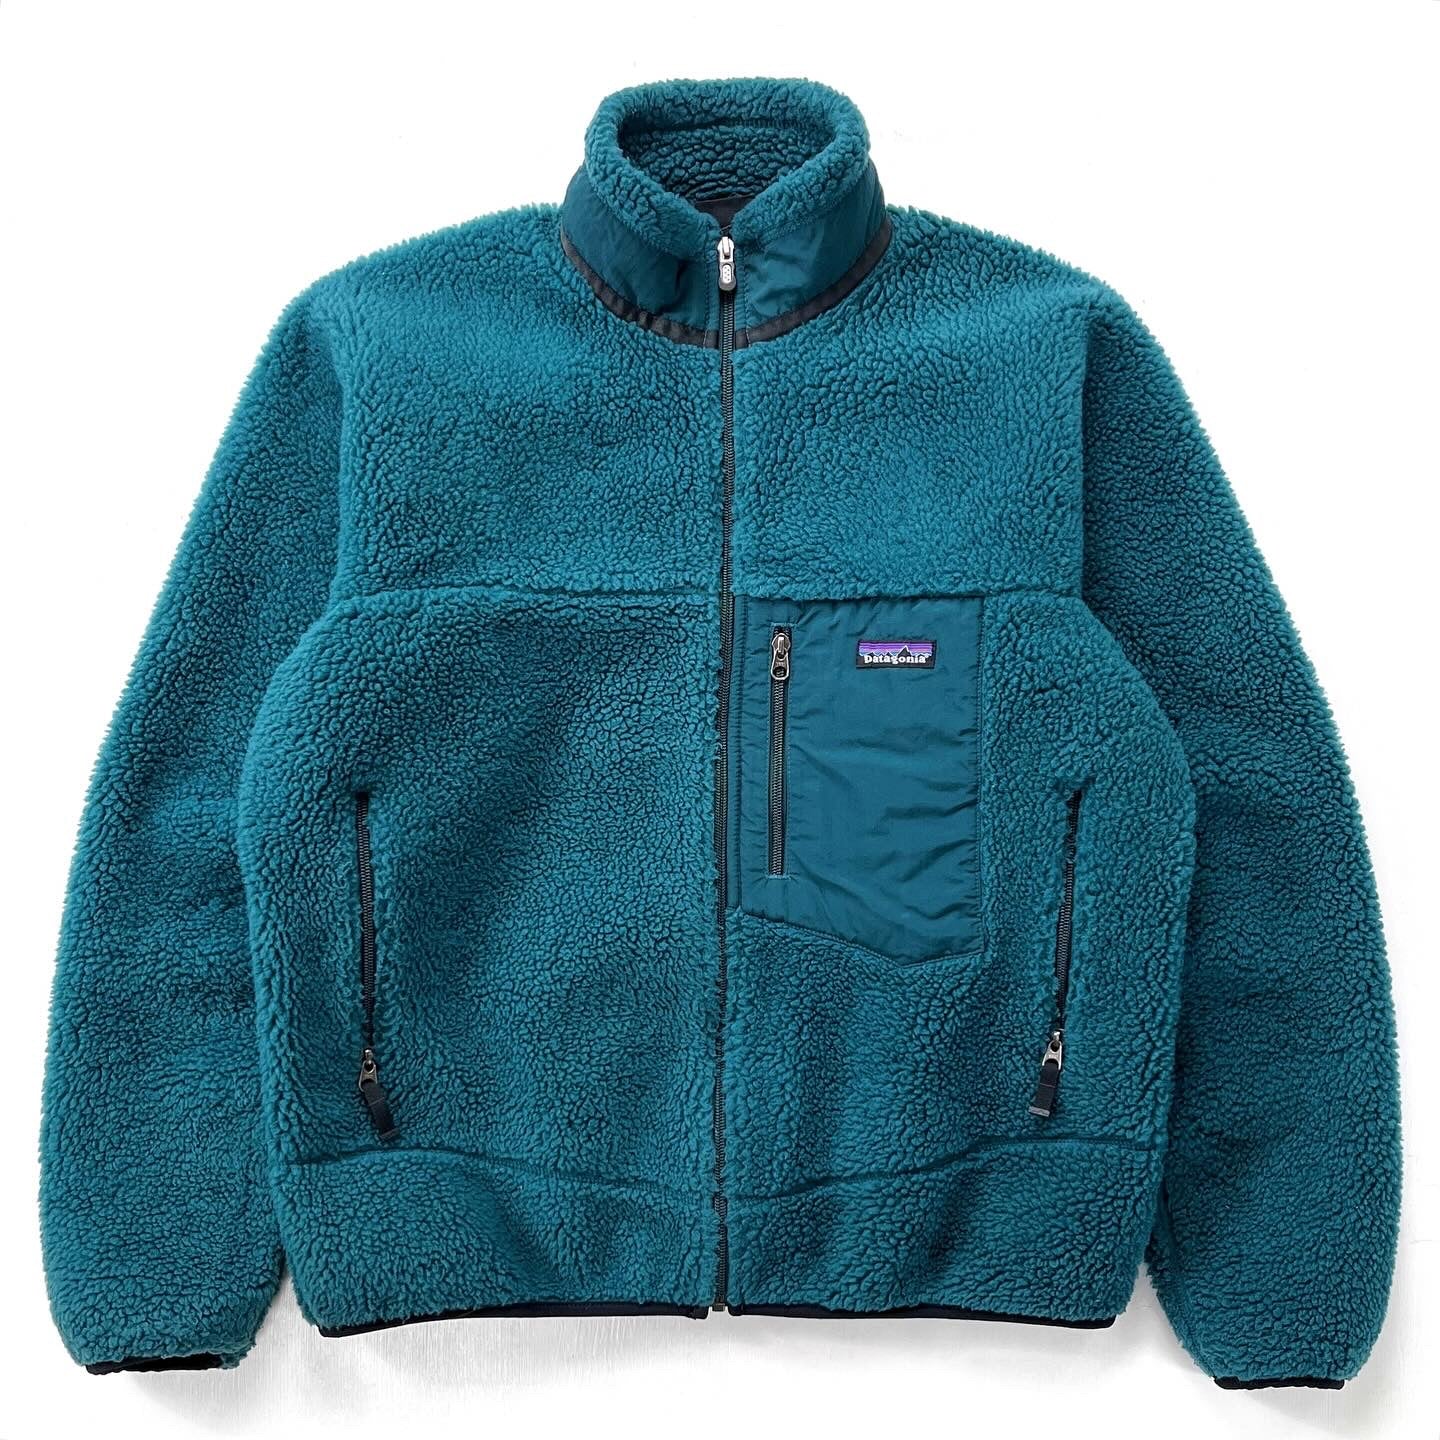 2007 Patagonia Classic Retro-X Fleece Jacket, Aurora Borealis (M)